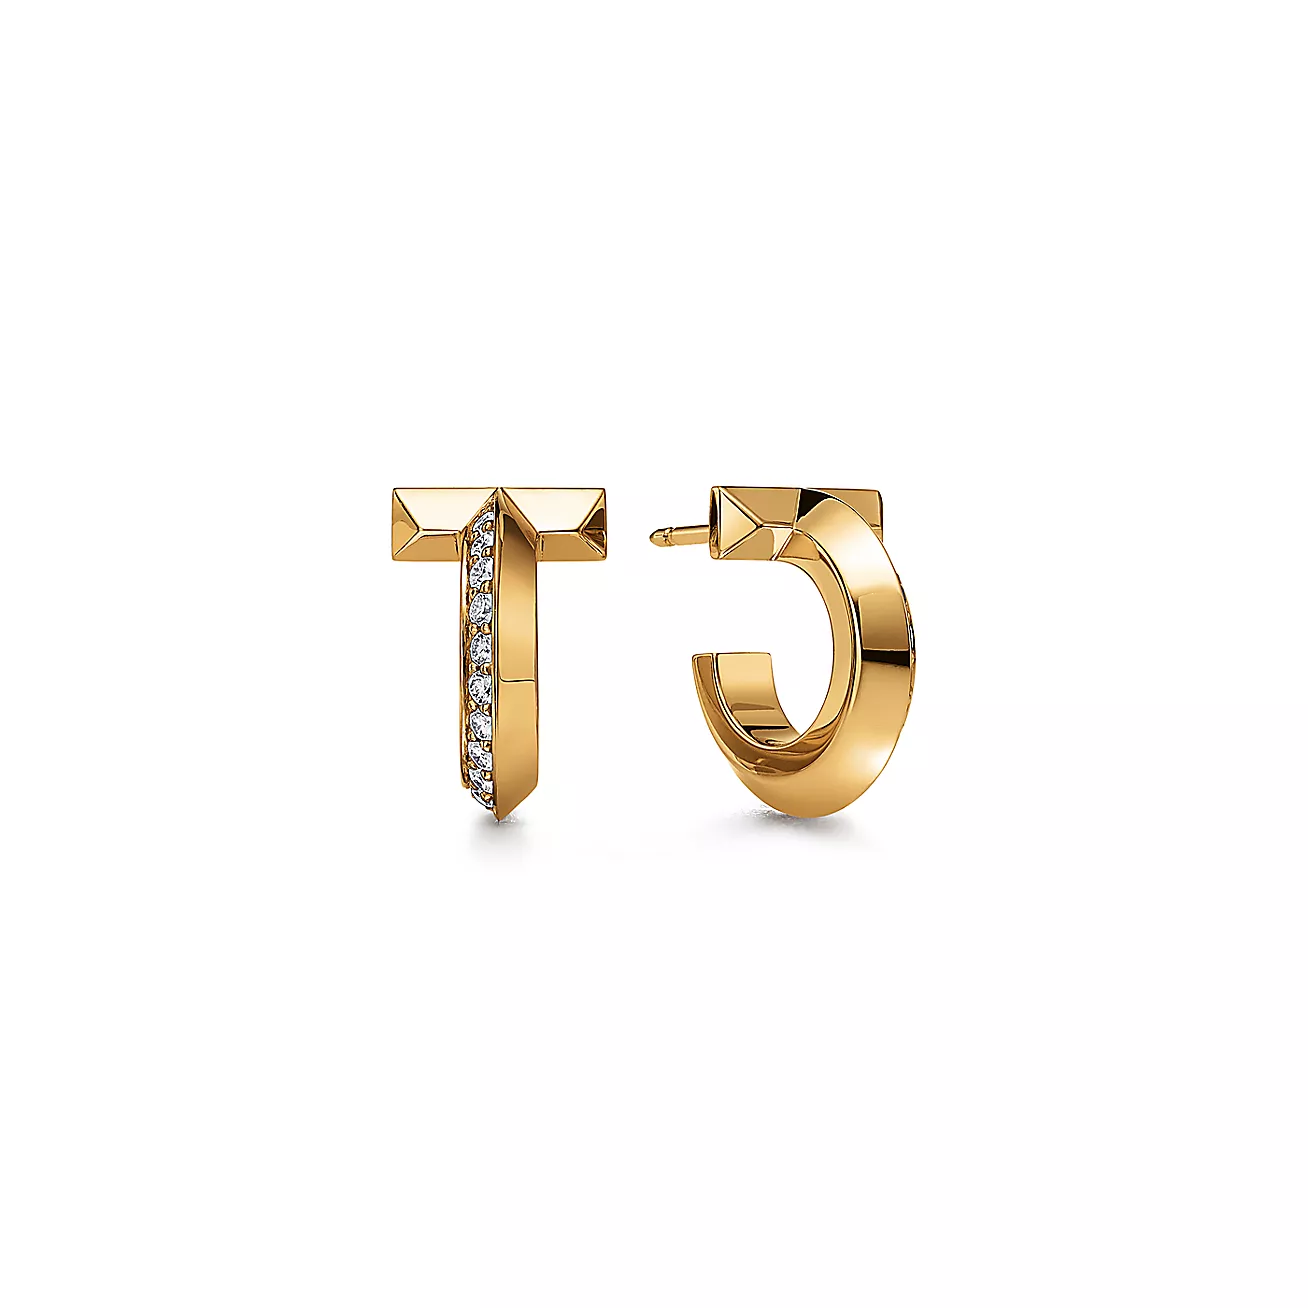 Tiffany T T1 Hoop Earrings